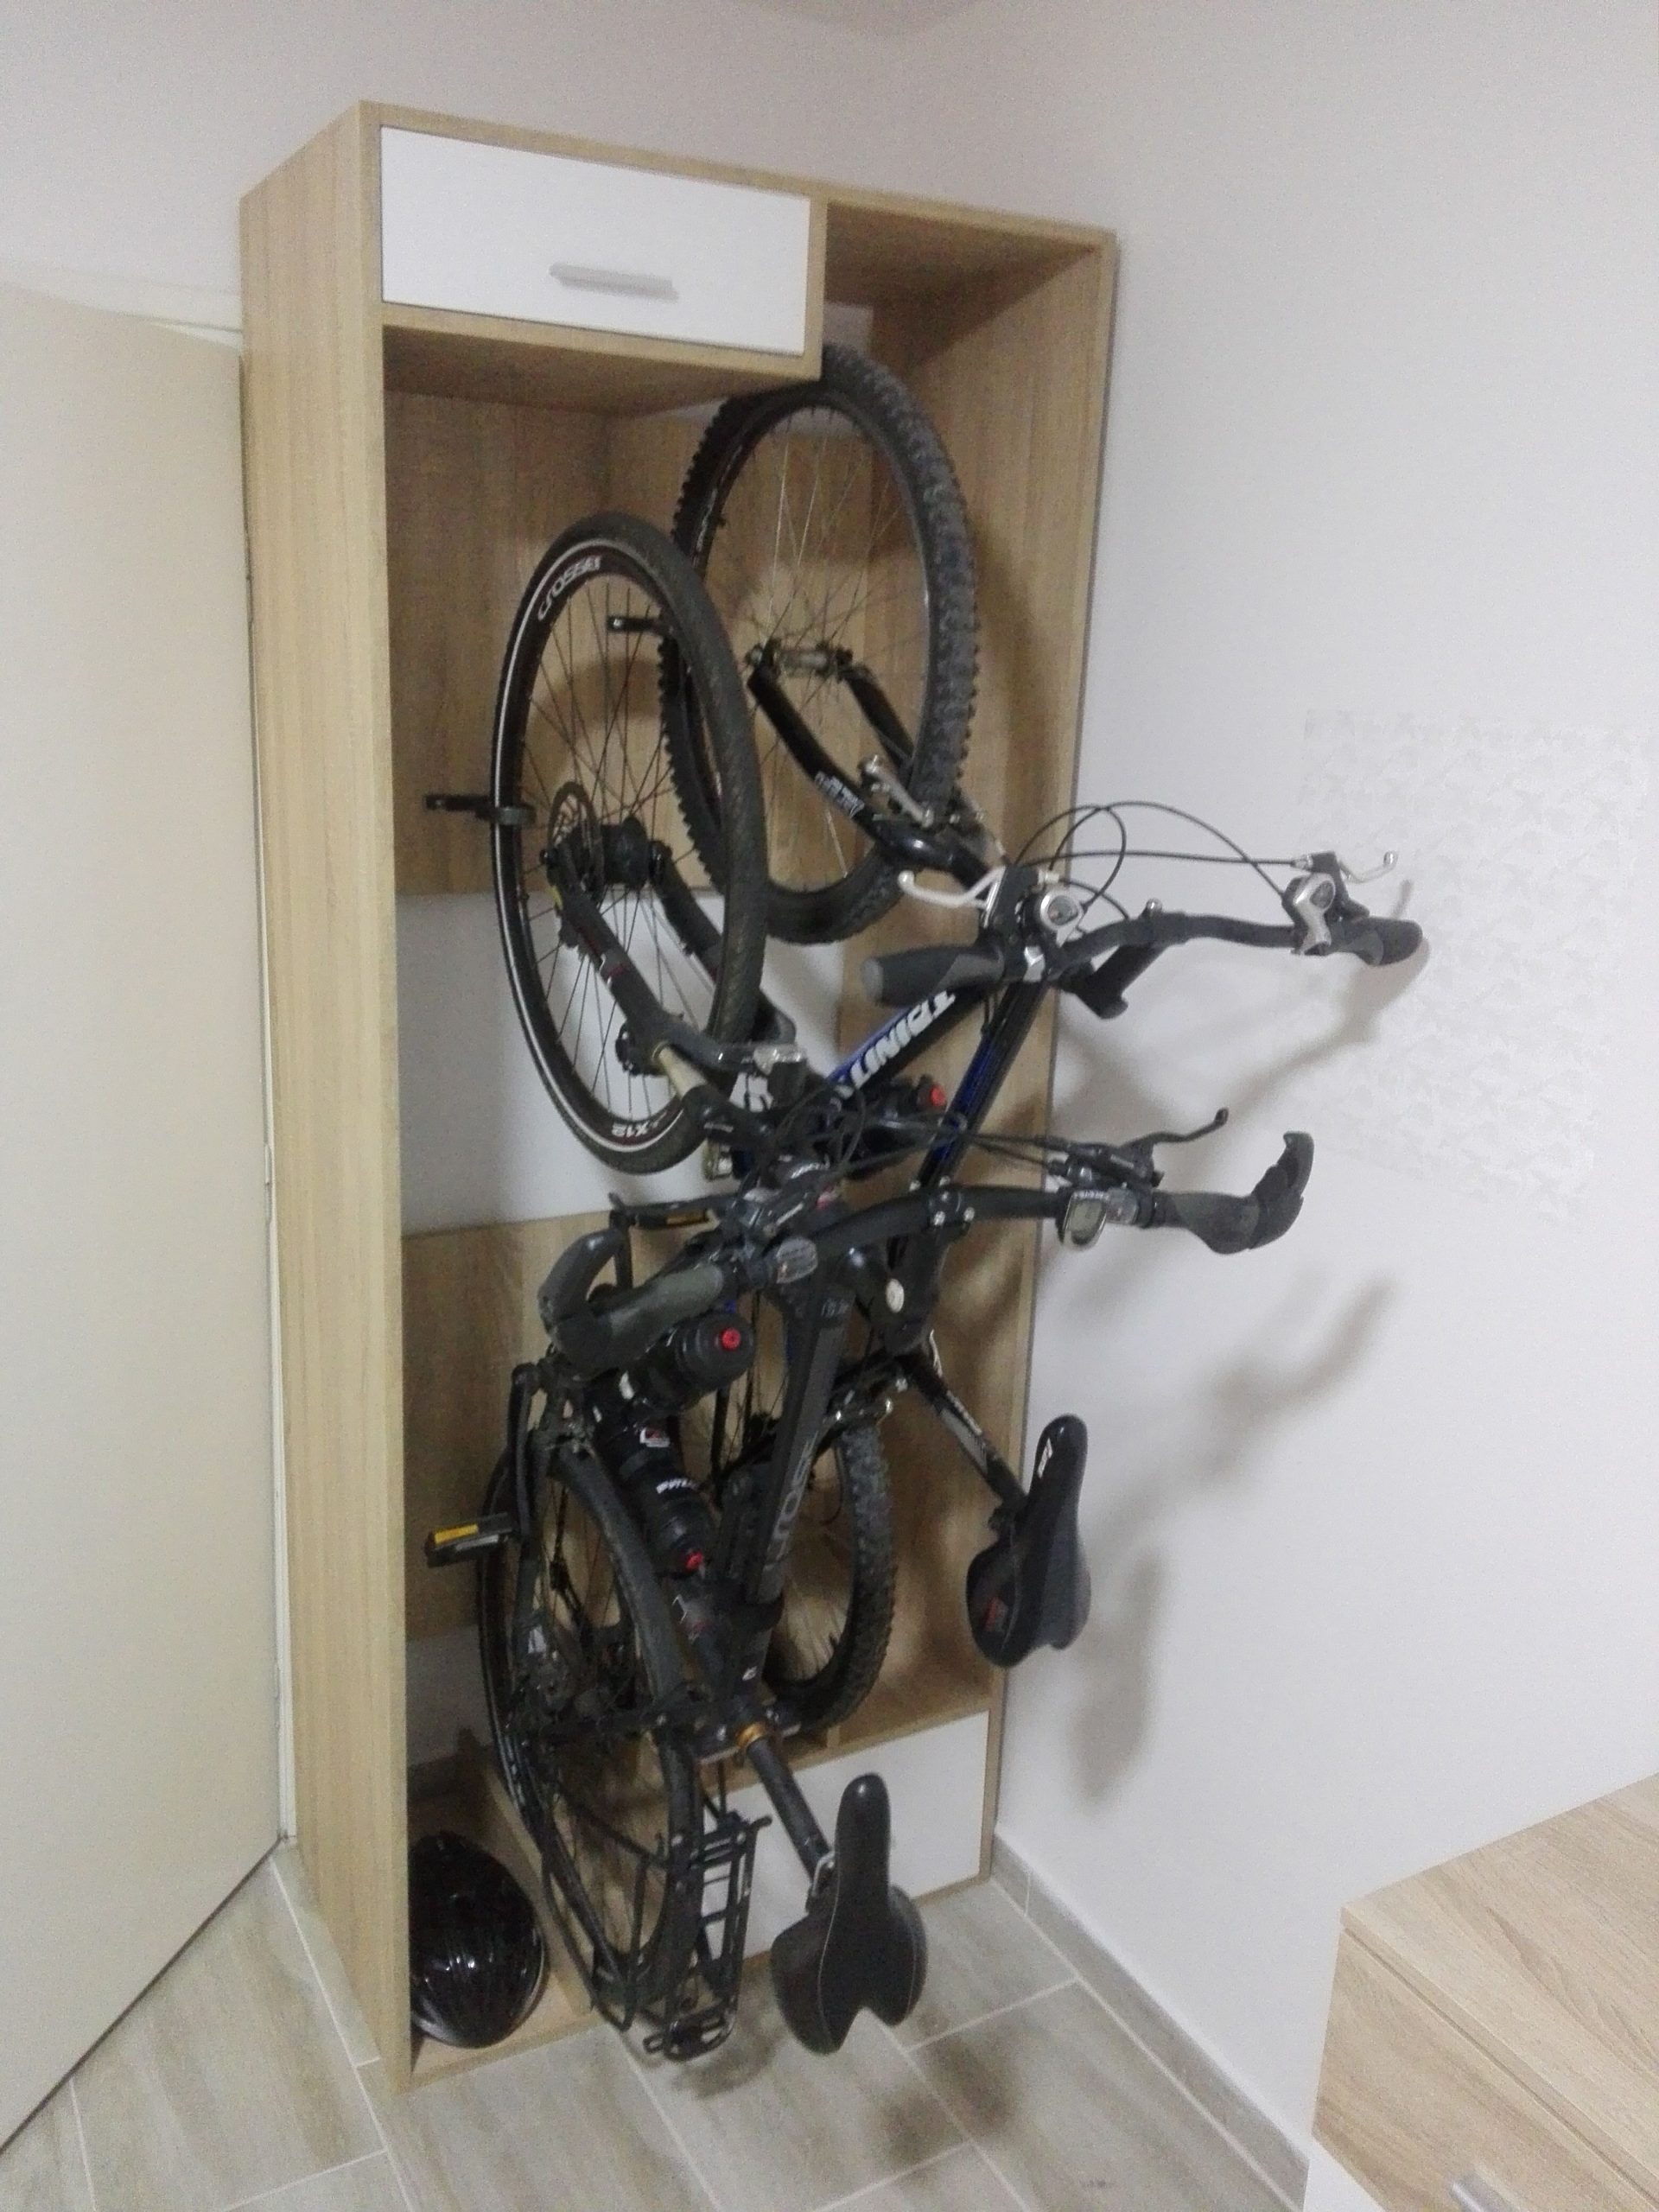 Bike storage closet